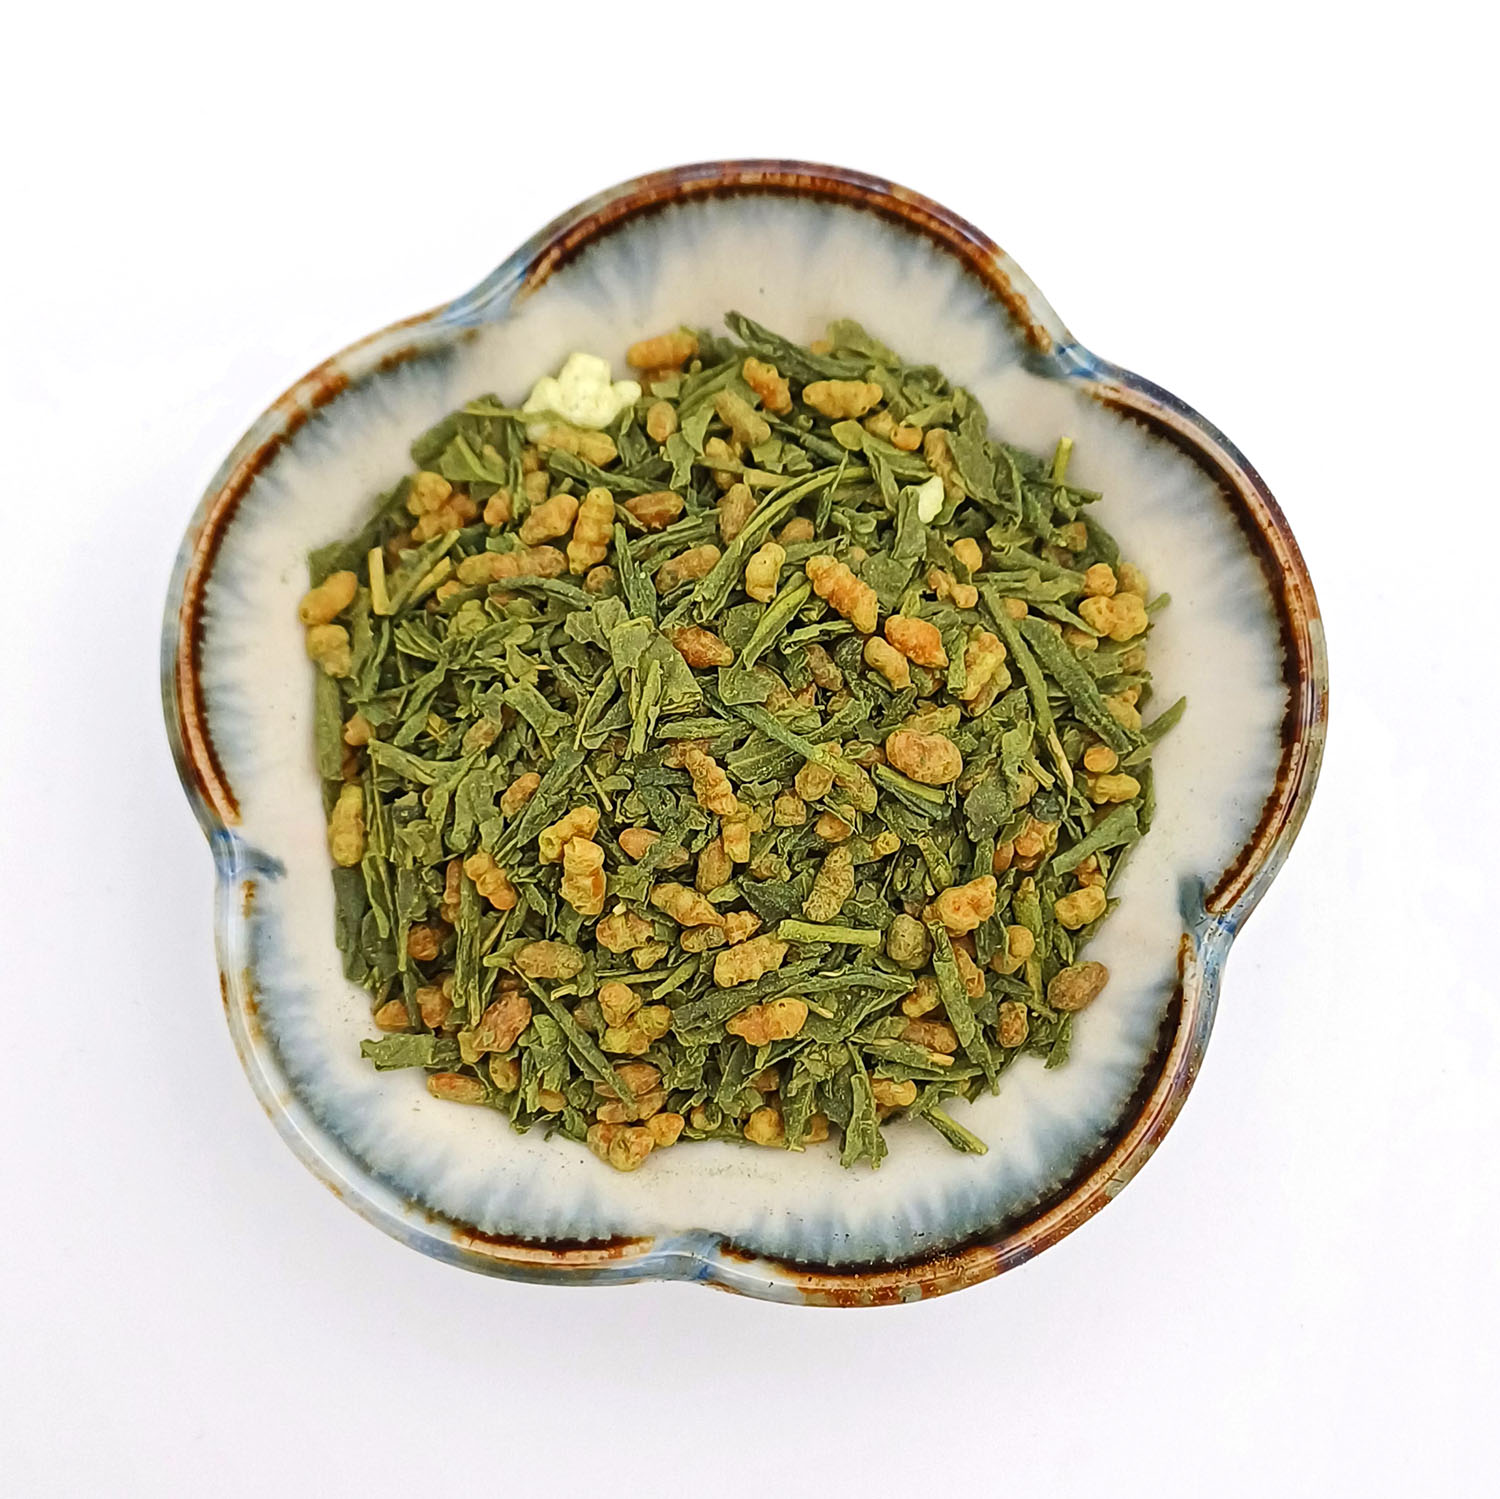 Thé matcha : notre sélection de thé vert